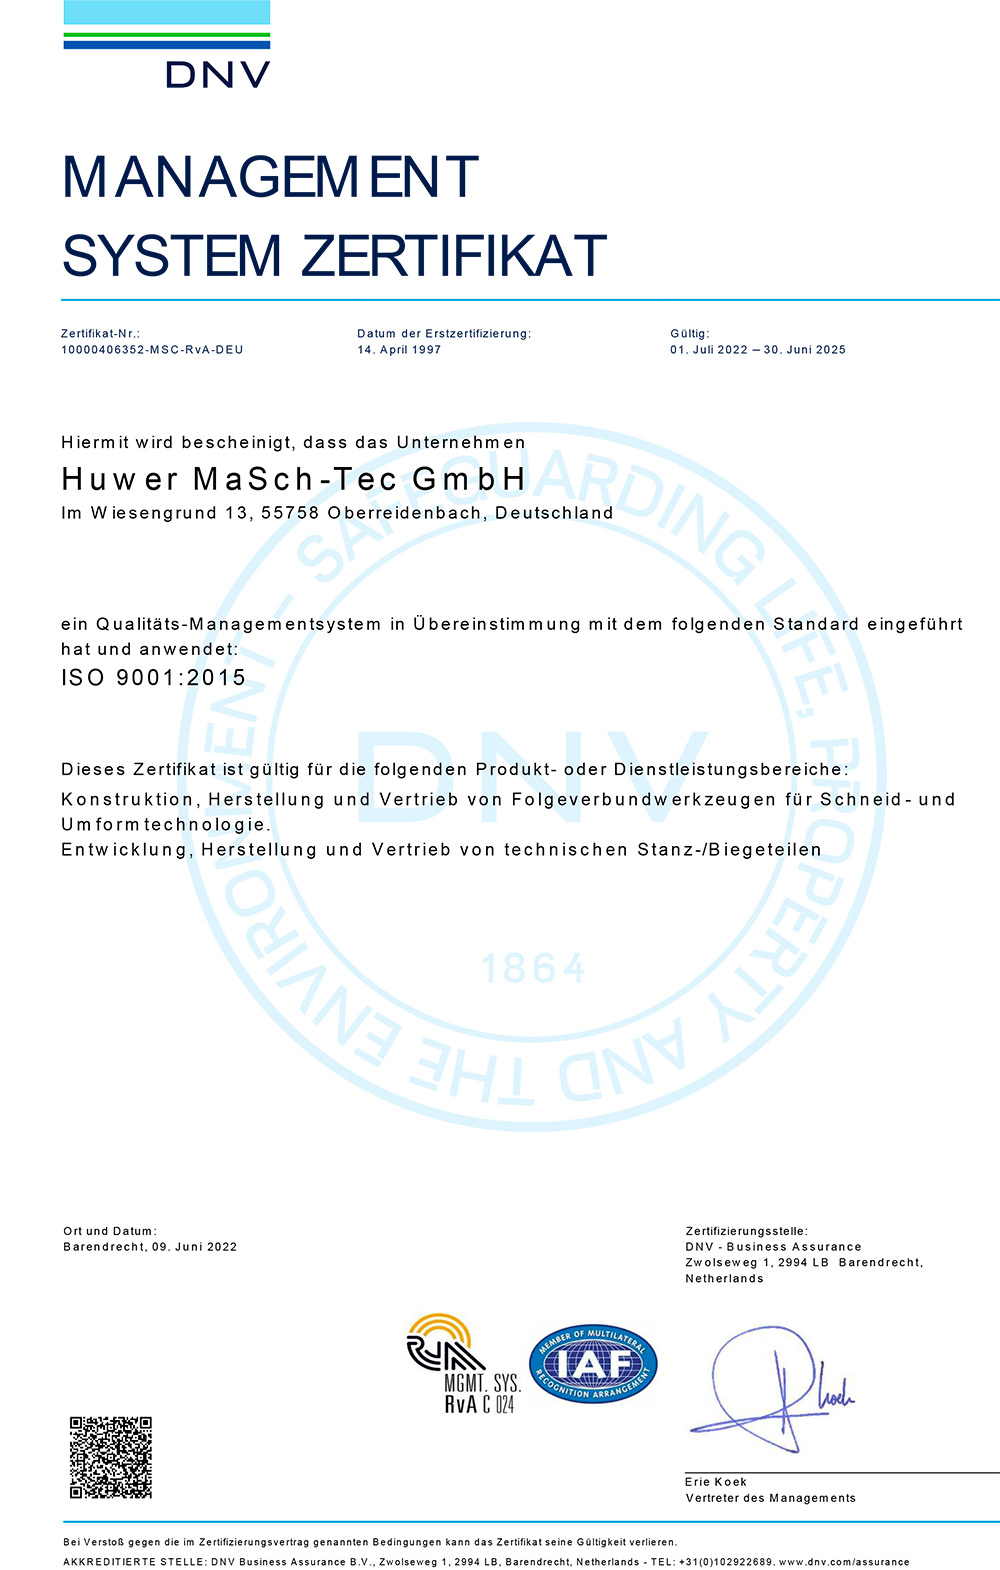 Unsere Zertifizierung nach ISO-Standard 9001:2015.